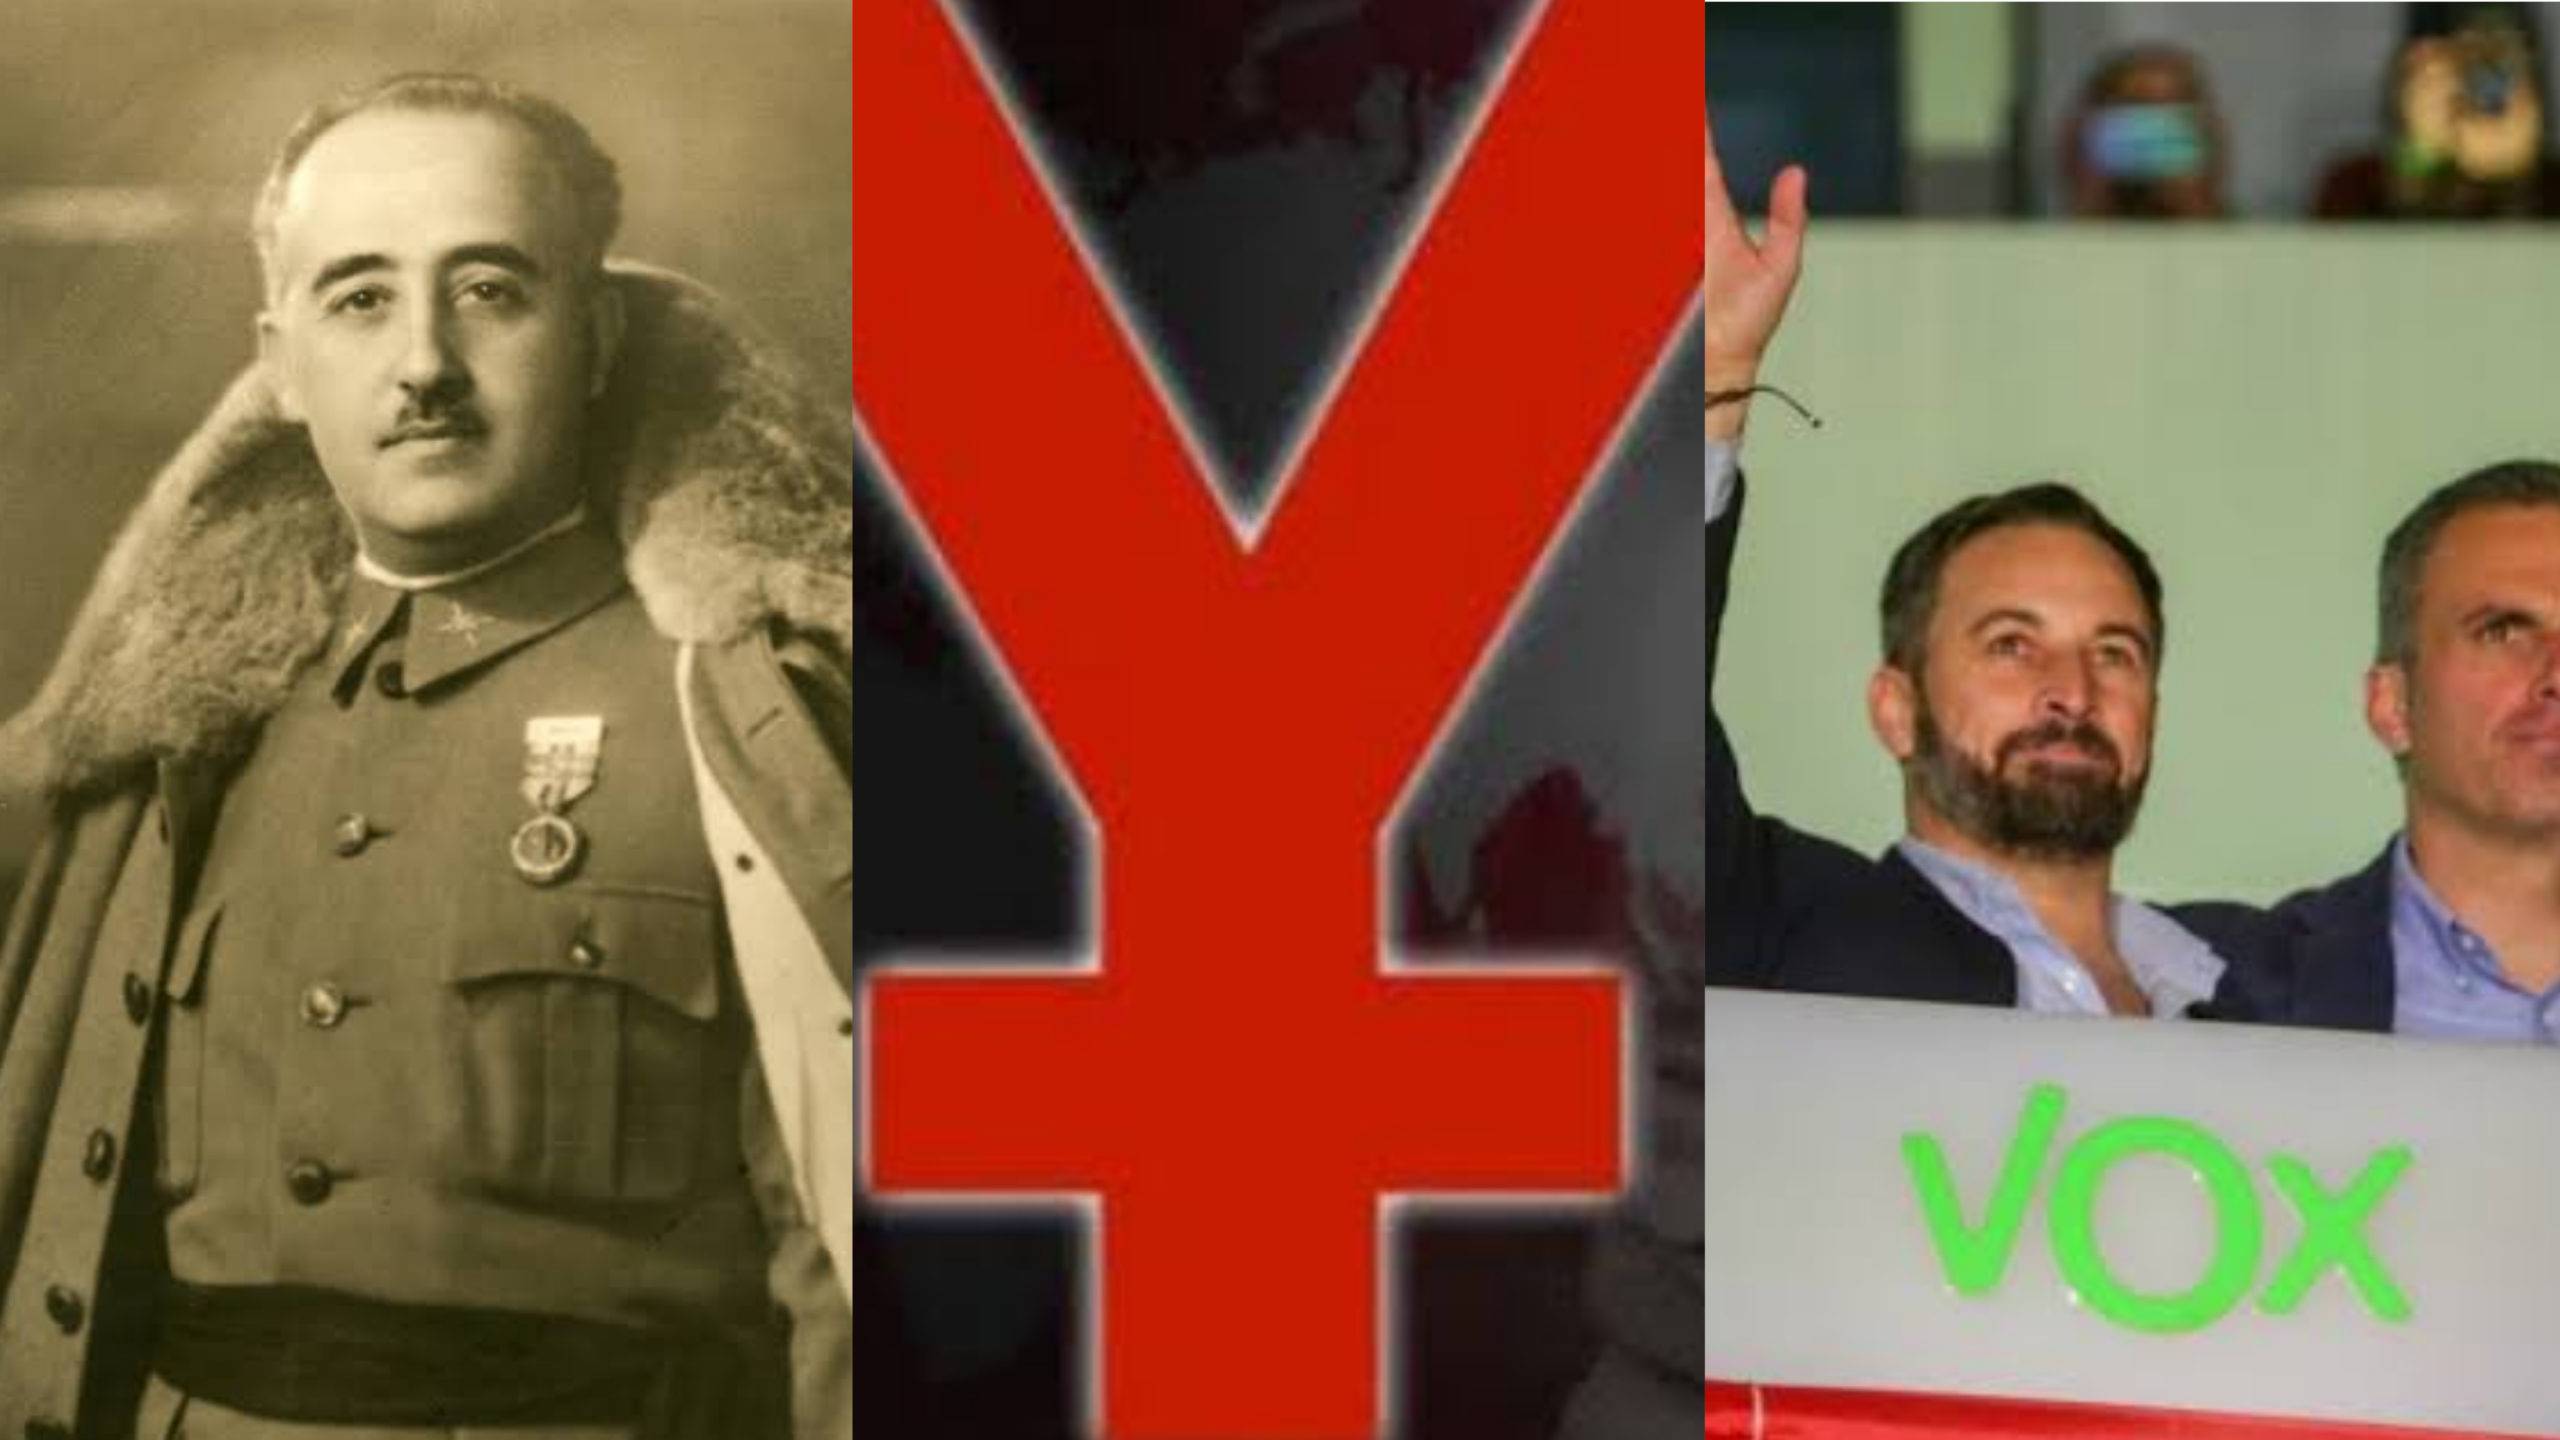 El Yunque, Vox y Fundación Franco tendrán canal de televisión en España